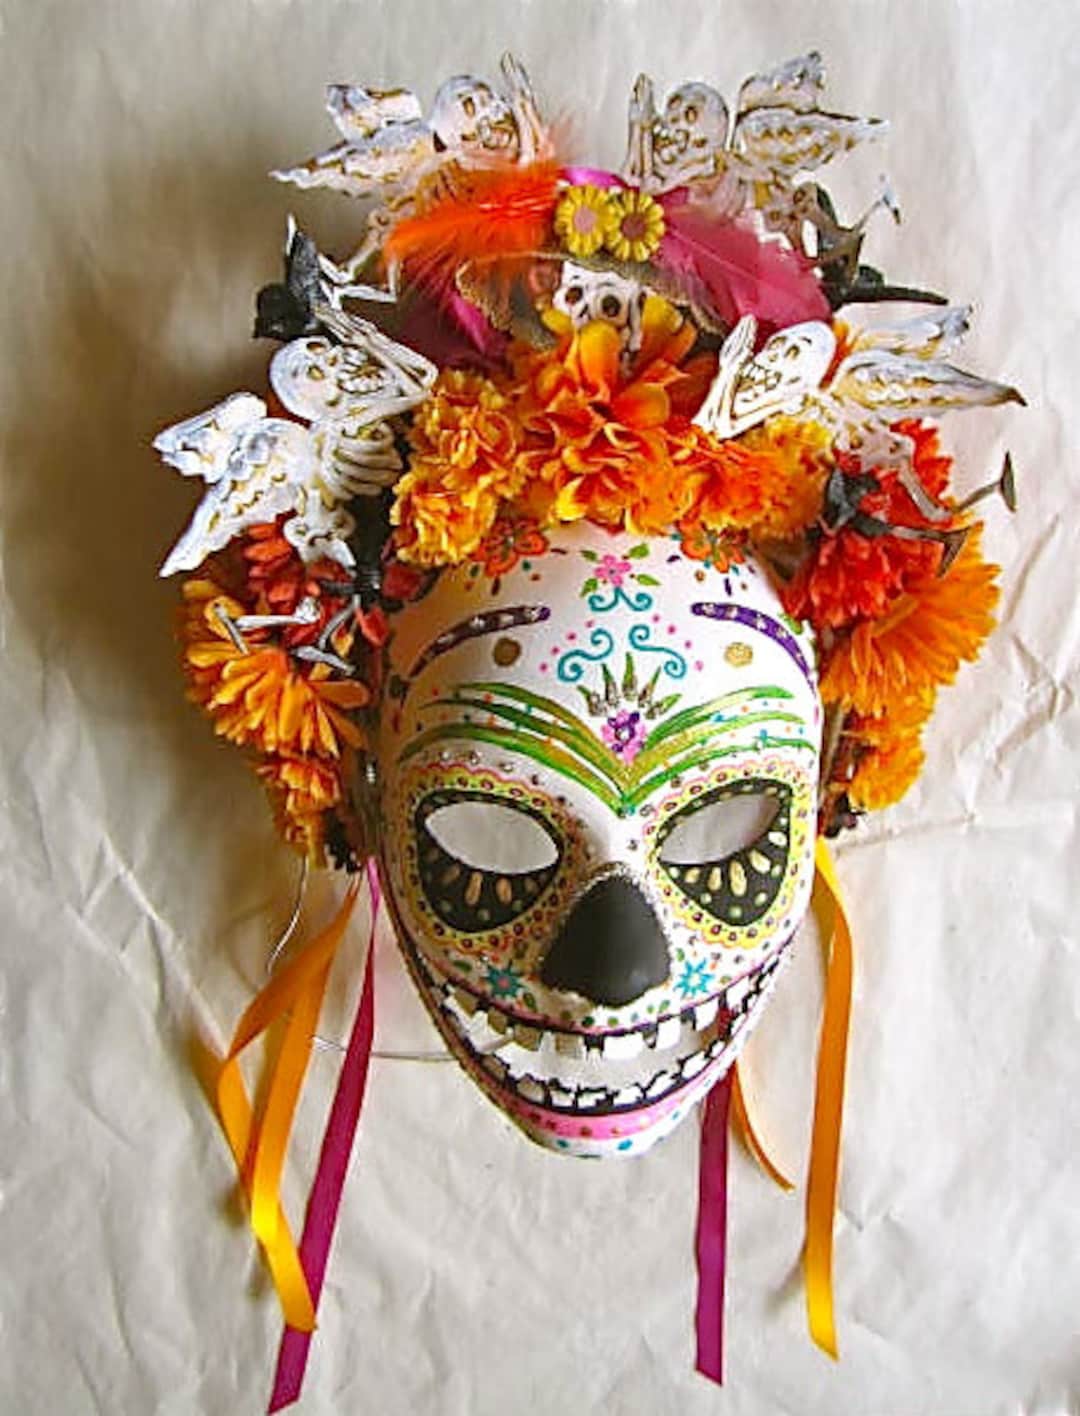 Hand Painted Dios De La Muerte Mask I painted. : r/Art